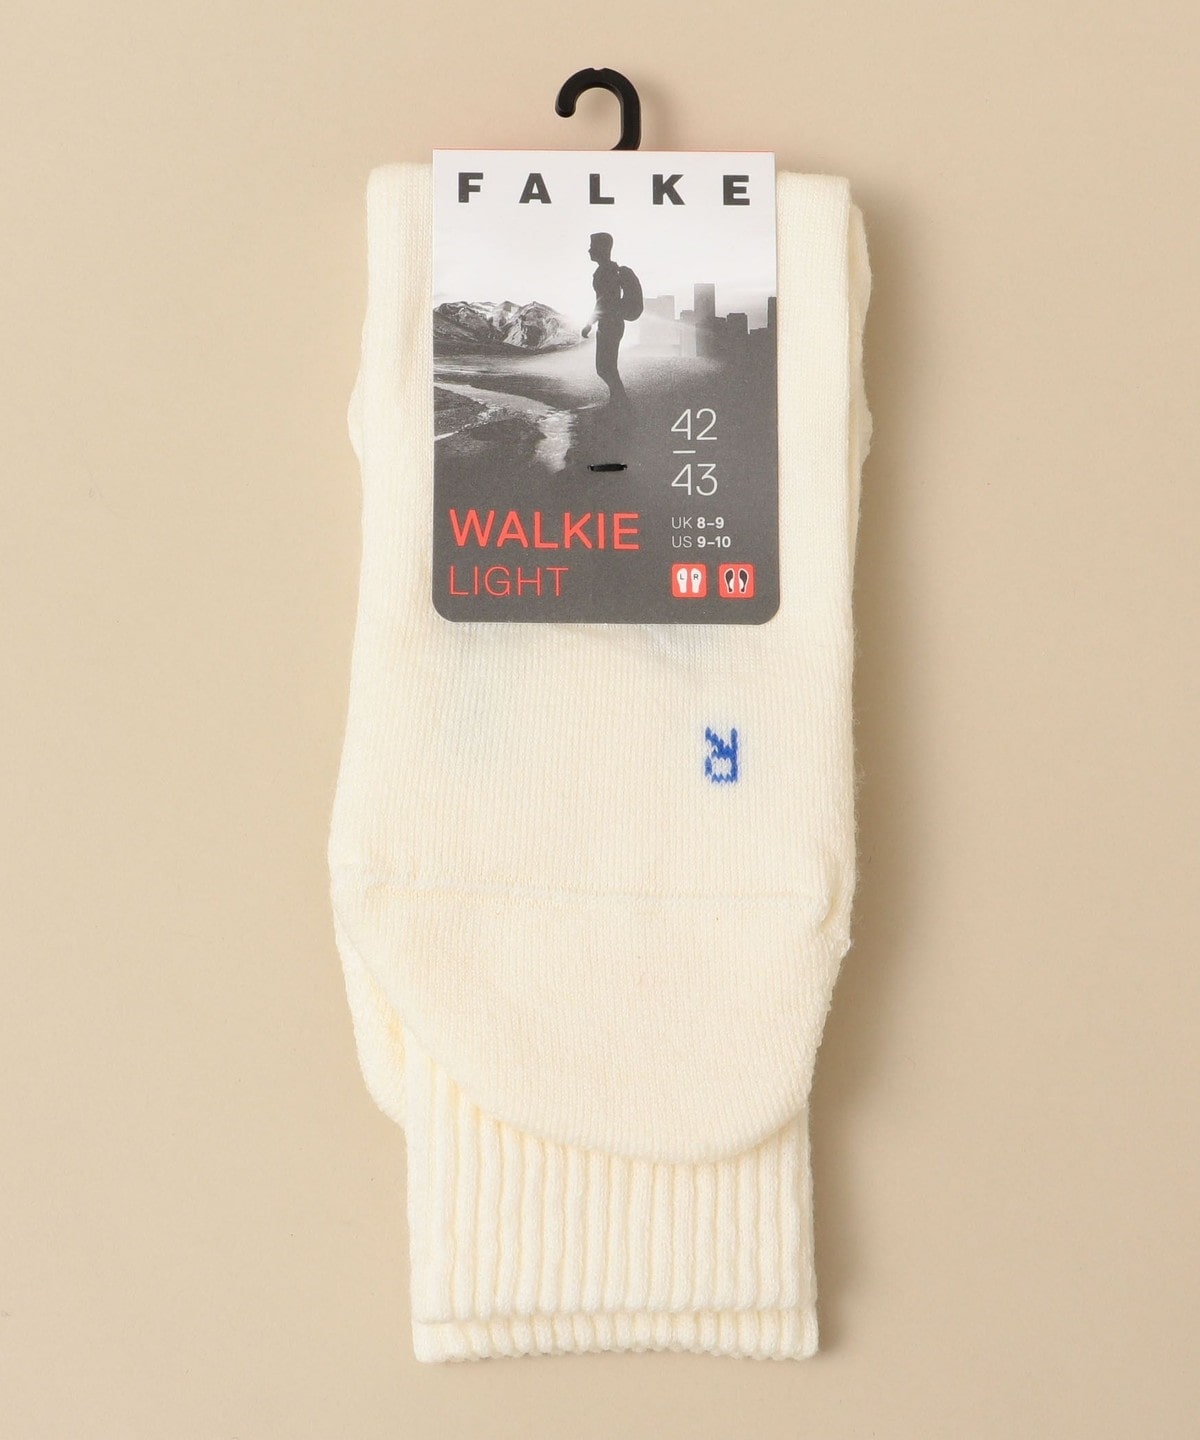 FALKE: WALKIE LIGHT ホワイト